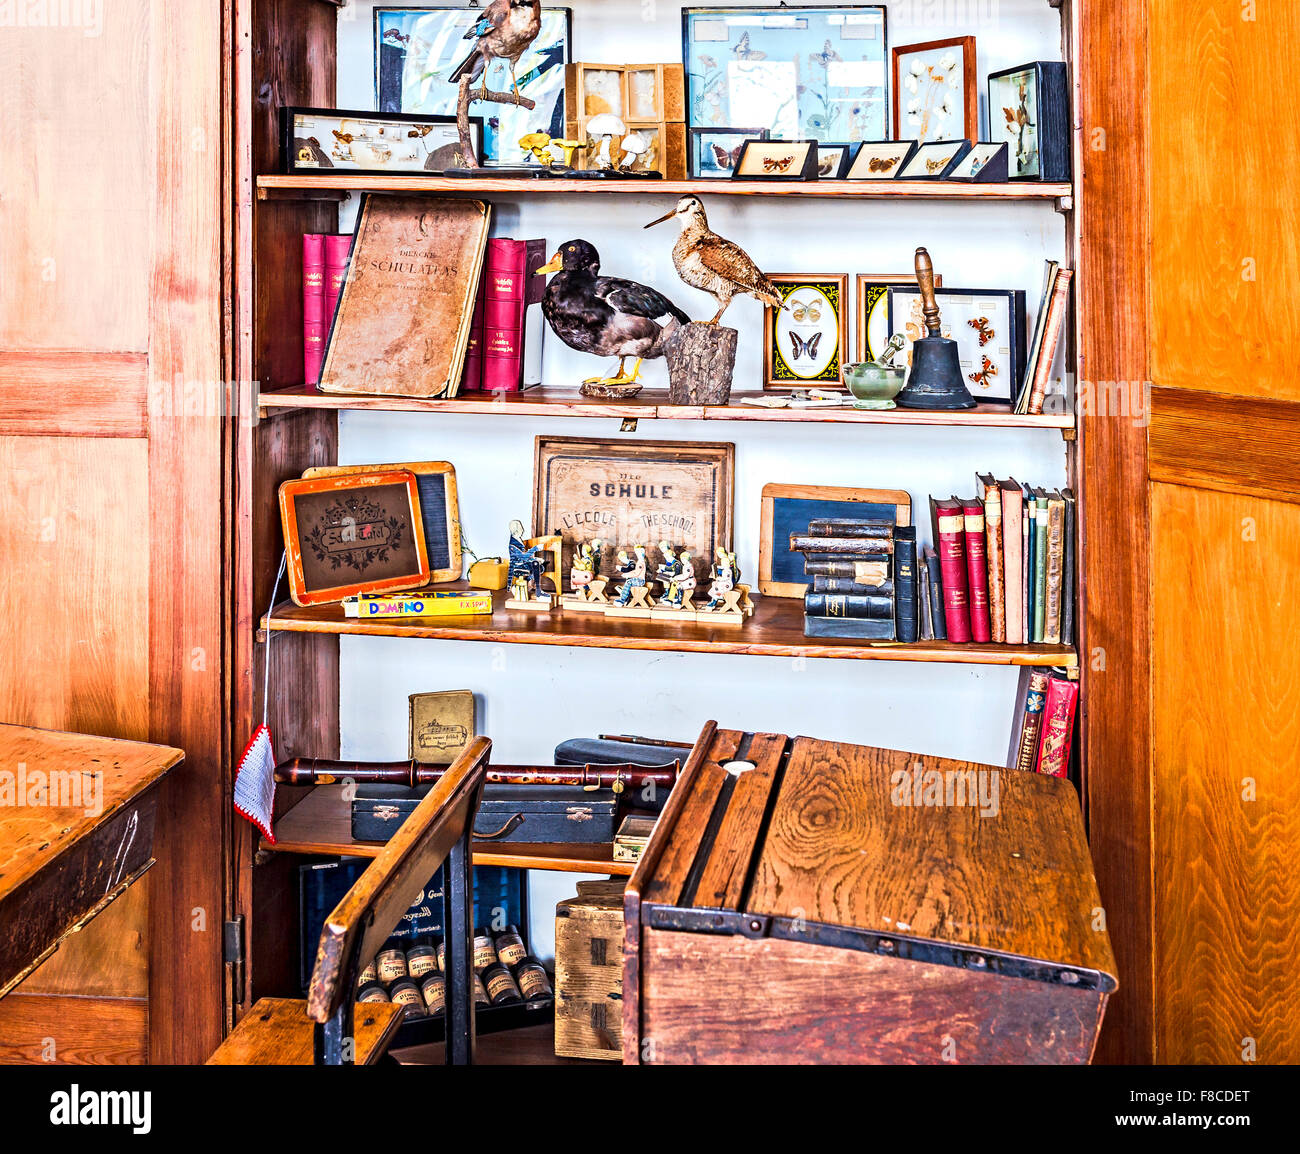 Alte historische Klassenzimmer Möbel; Dies in Einem alten Klassenzimmer Stockfoto